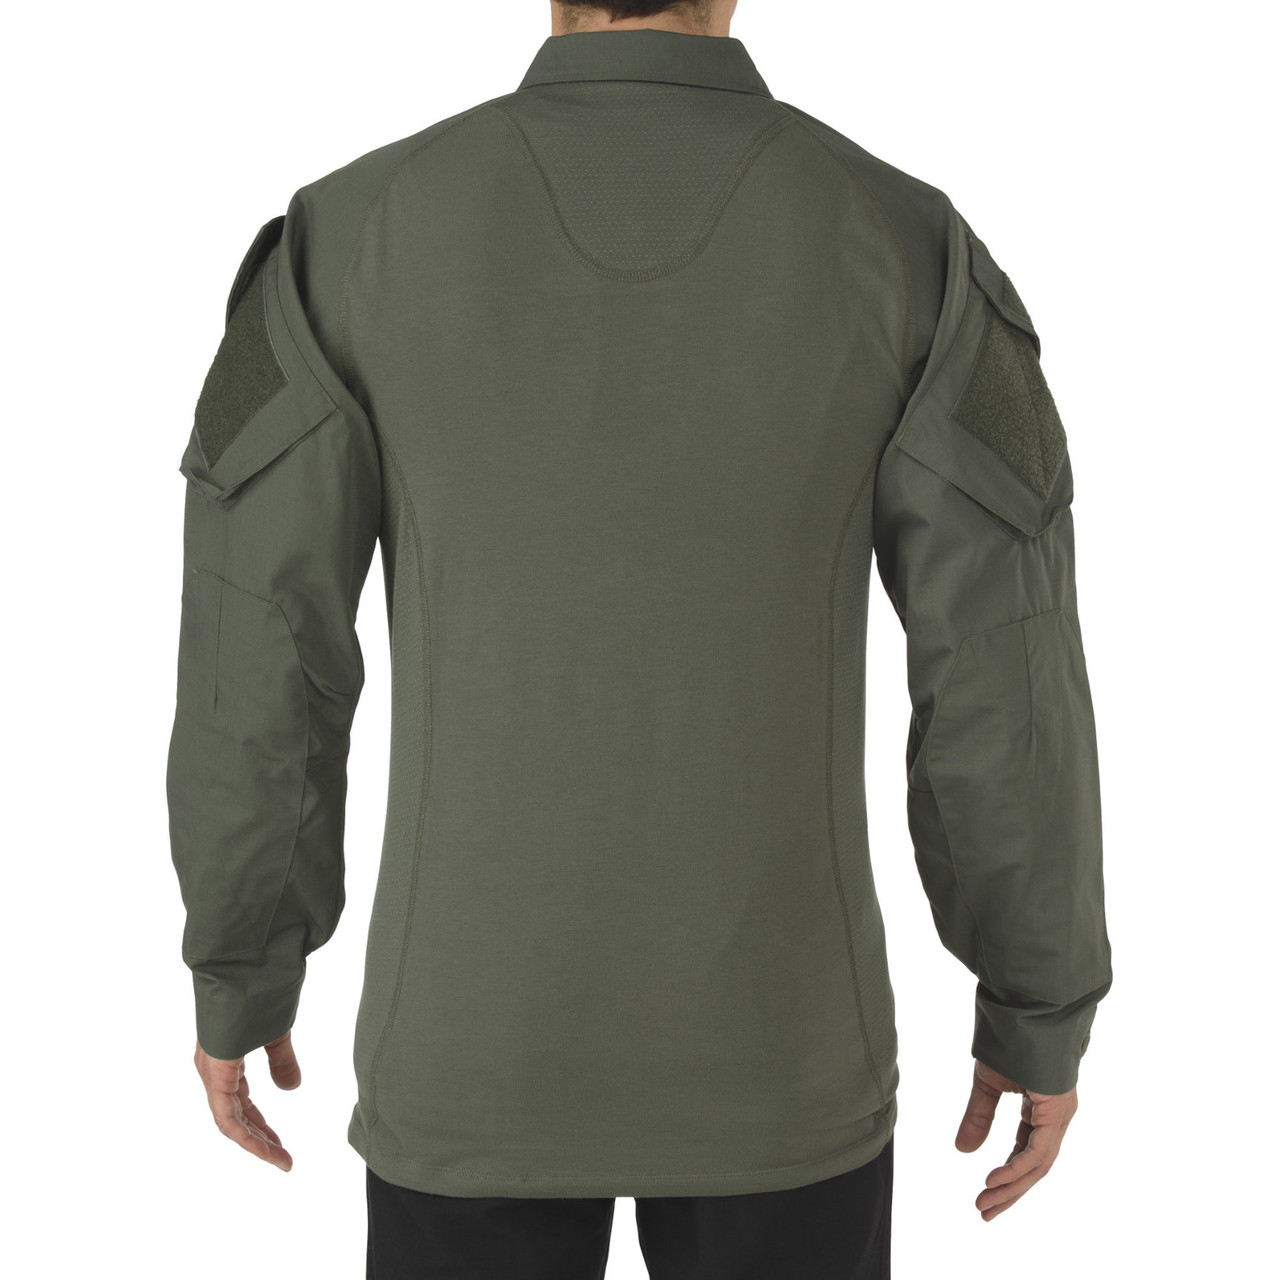 5.11 Tactical Men's Rapid Assault Shirt Long Sleeve